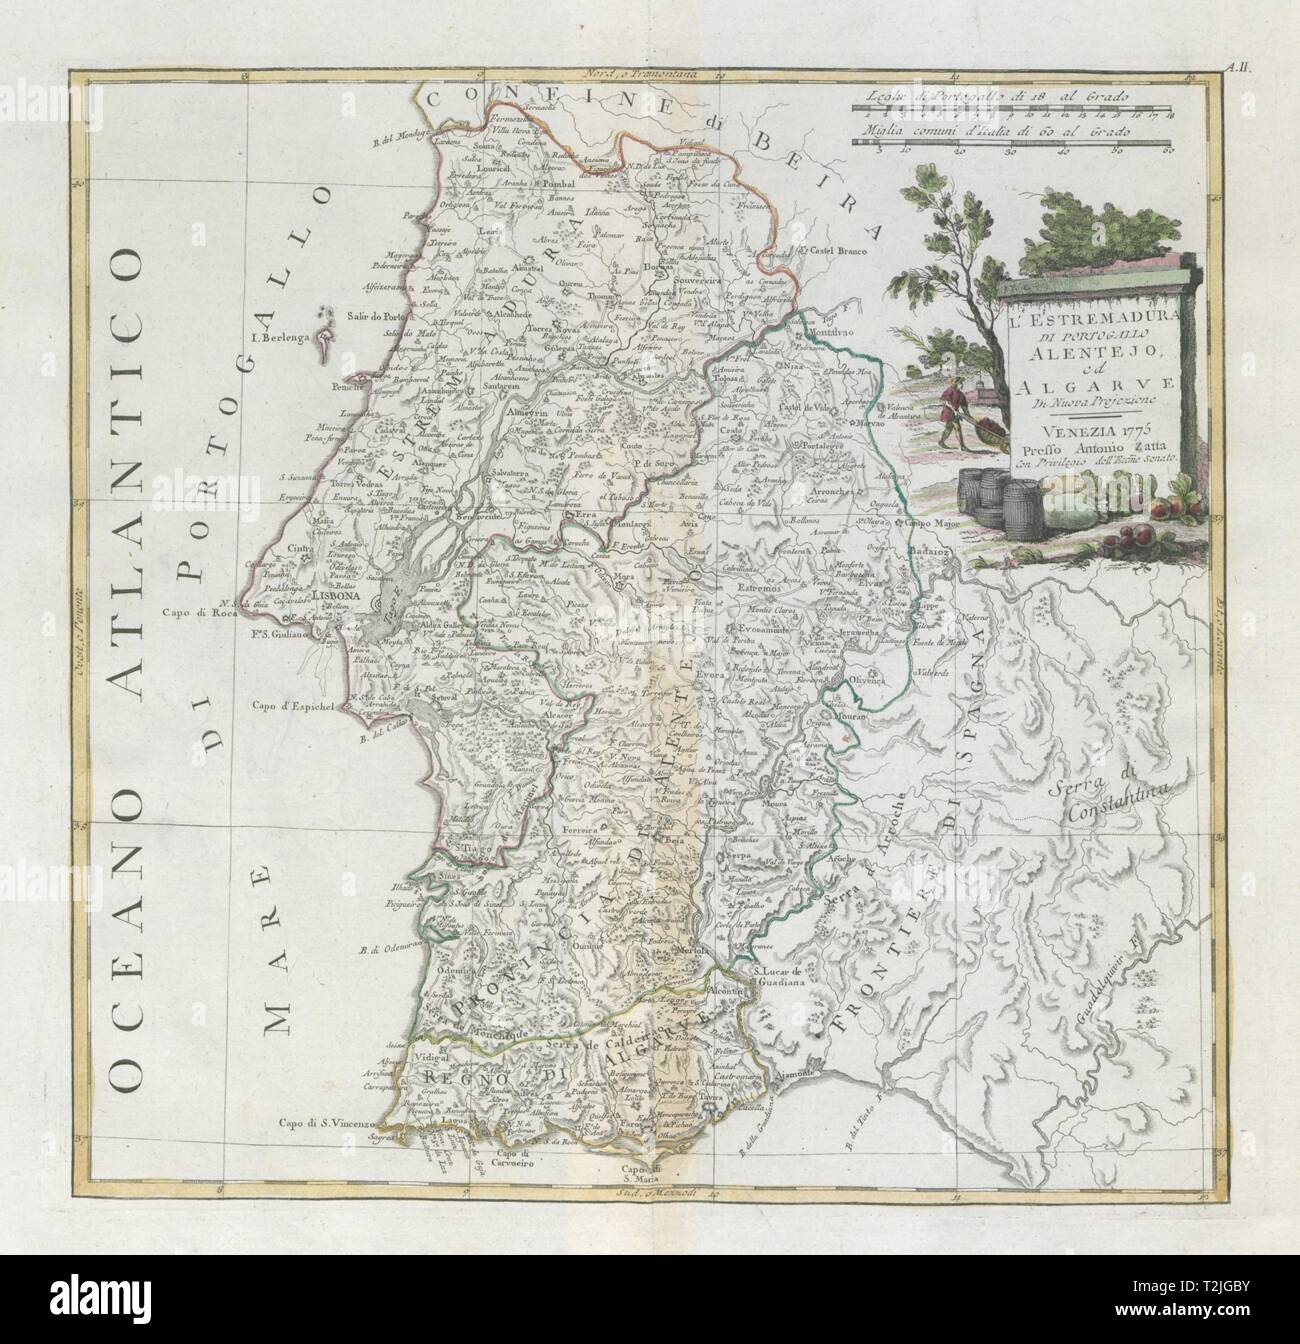 'L'Estremadura di Portogallo, Allentejo, Algarve' Portugal South. ZATTA 1779 map Stock Photo